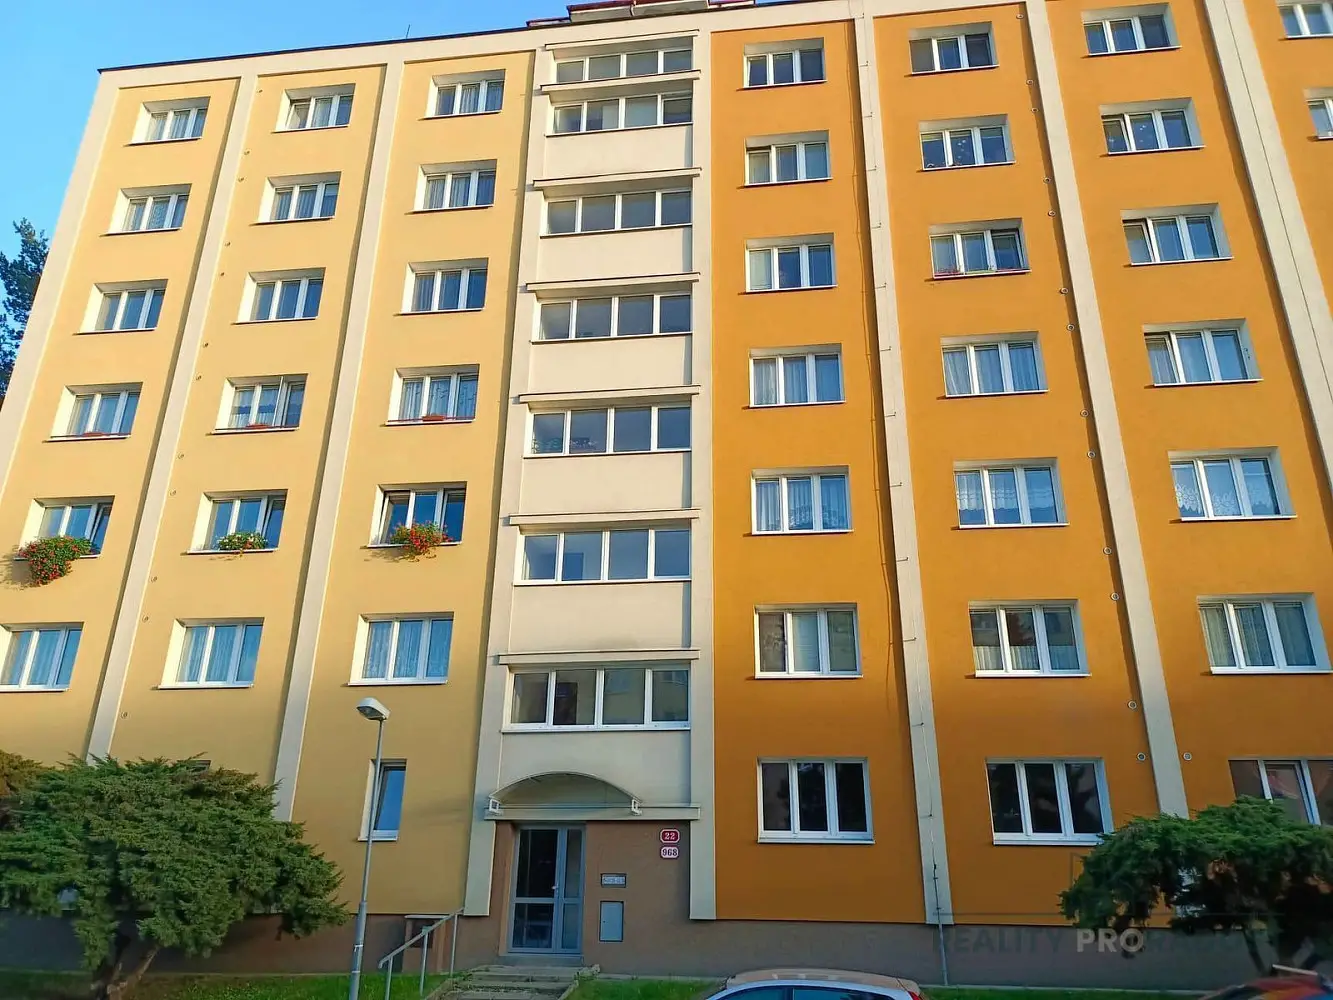 Smrková, Plzeň - Doubravka